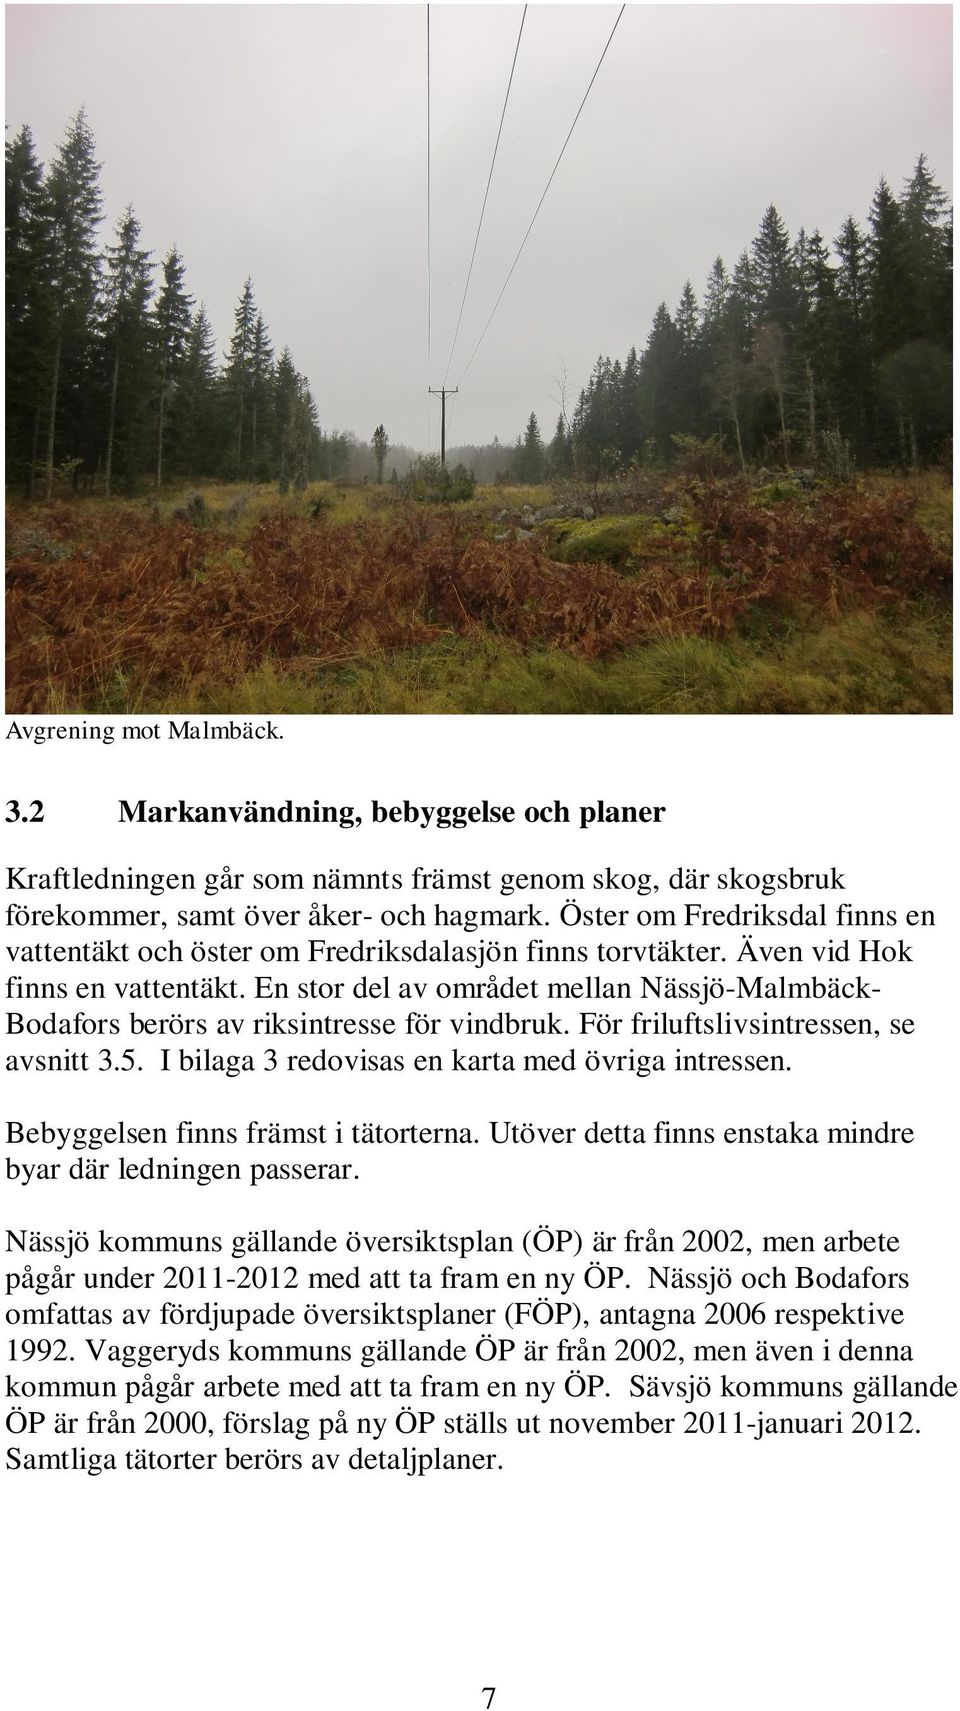 En stor del av området mellan Nässjö-Malmbäck- Bodafors berörs av riksintresse för vindbruk. För friluftslivsintressen, se avsnitt 3.5. I bilaga 3 redovisas en karta med övriga intressen.